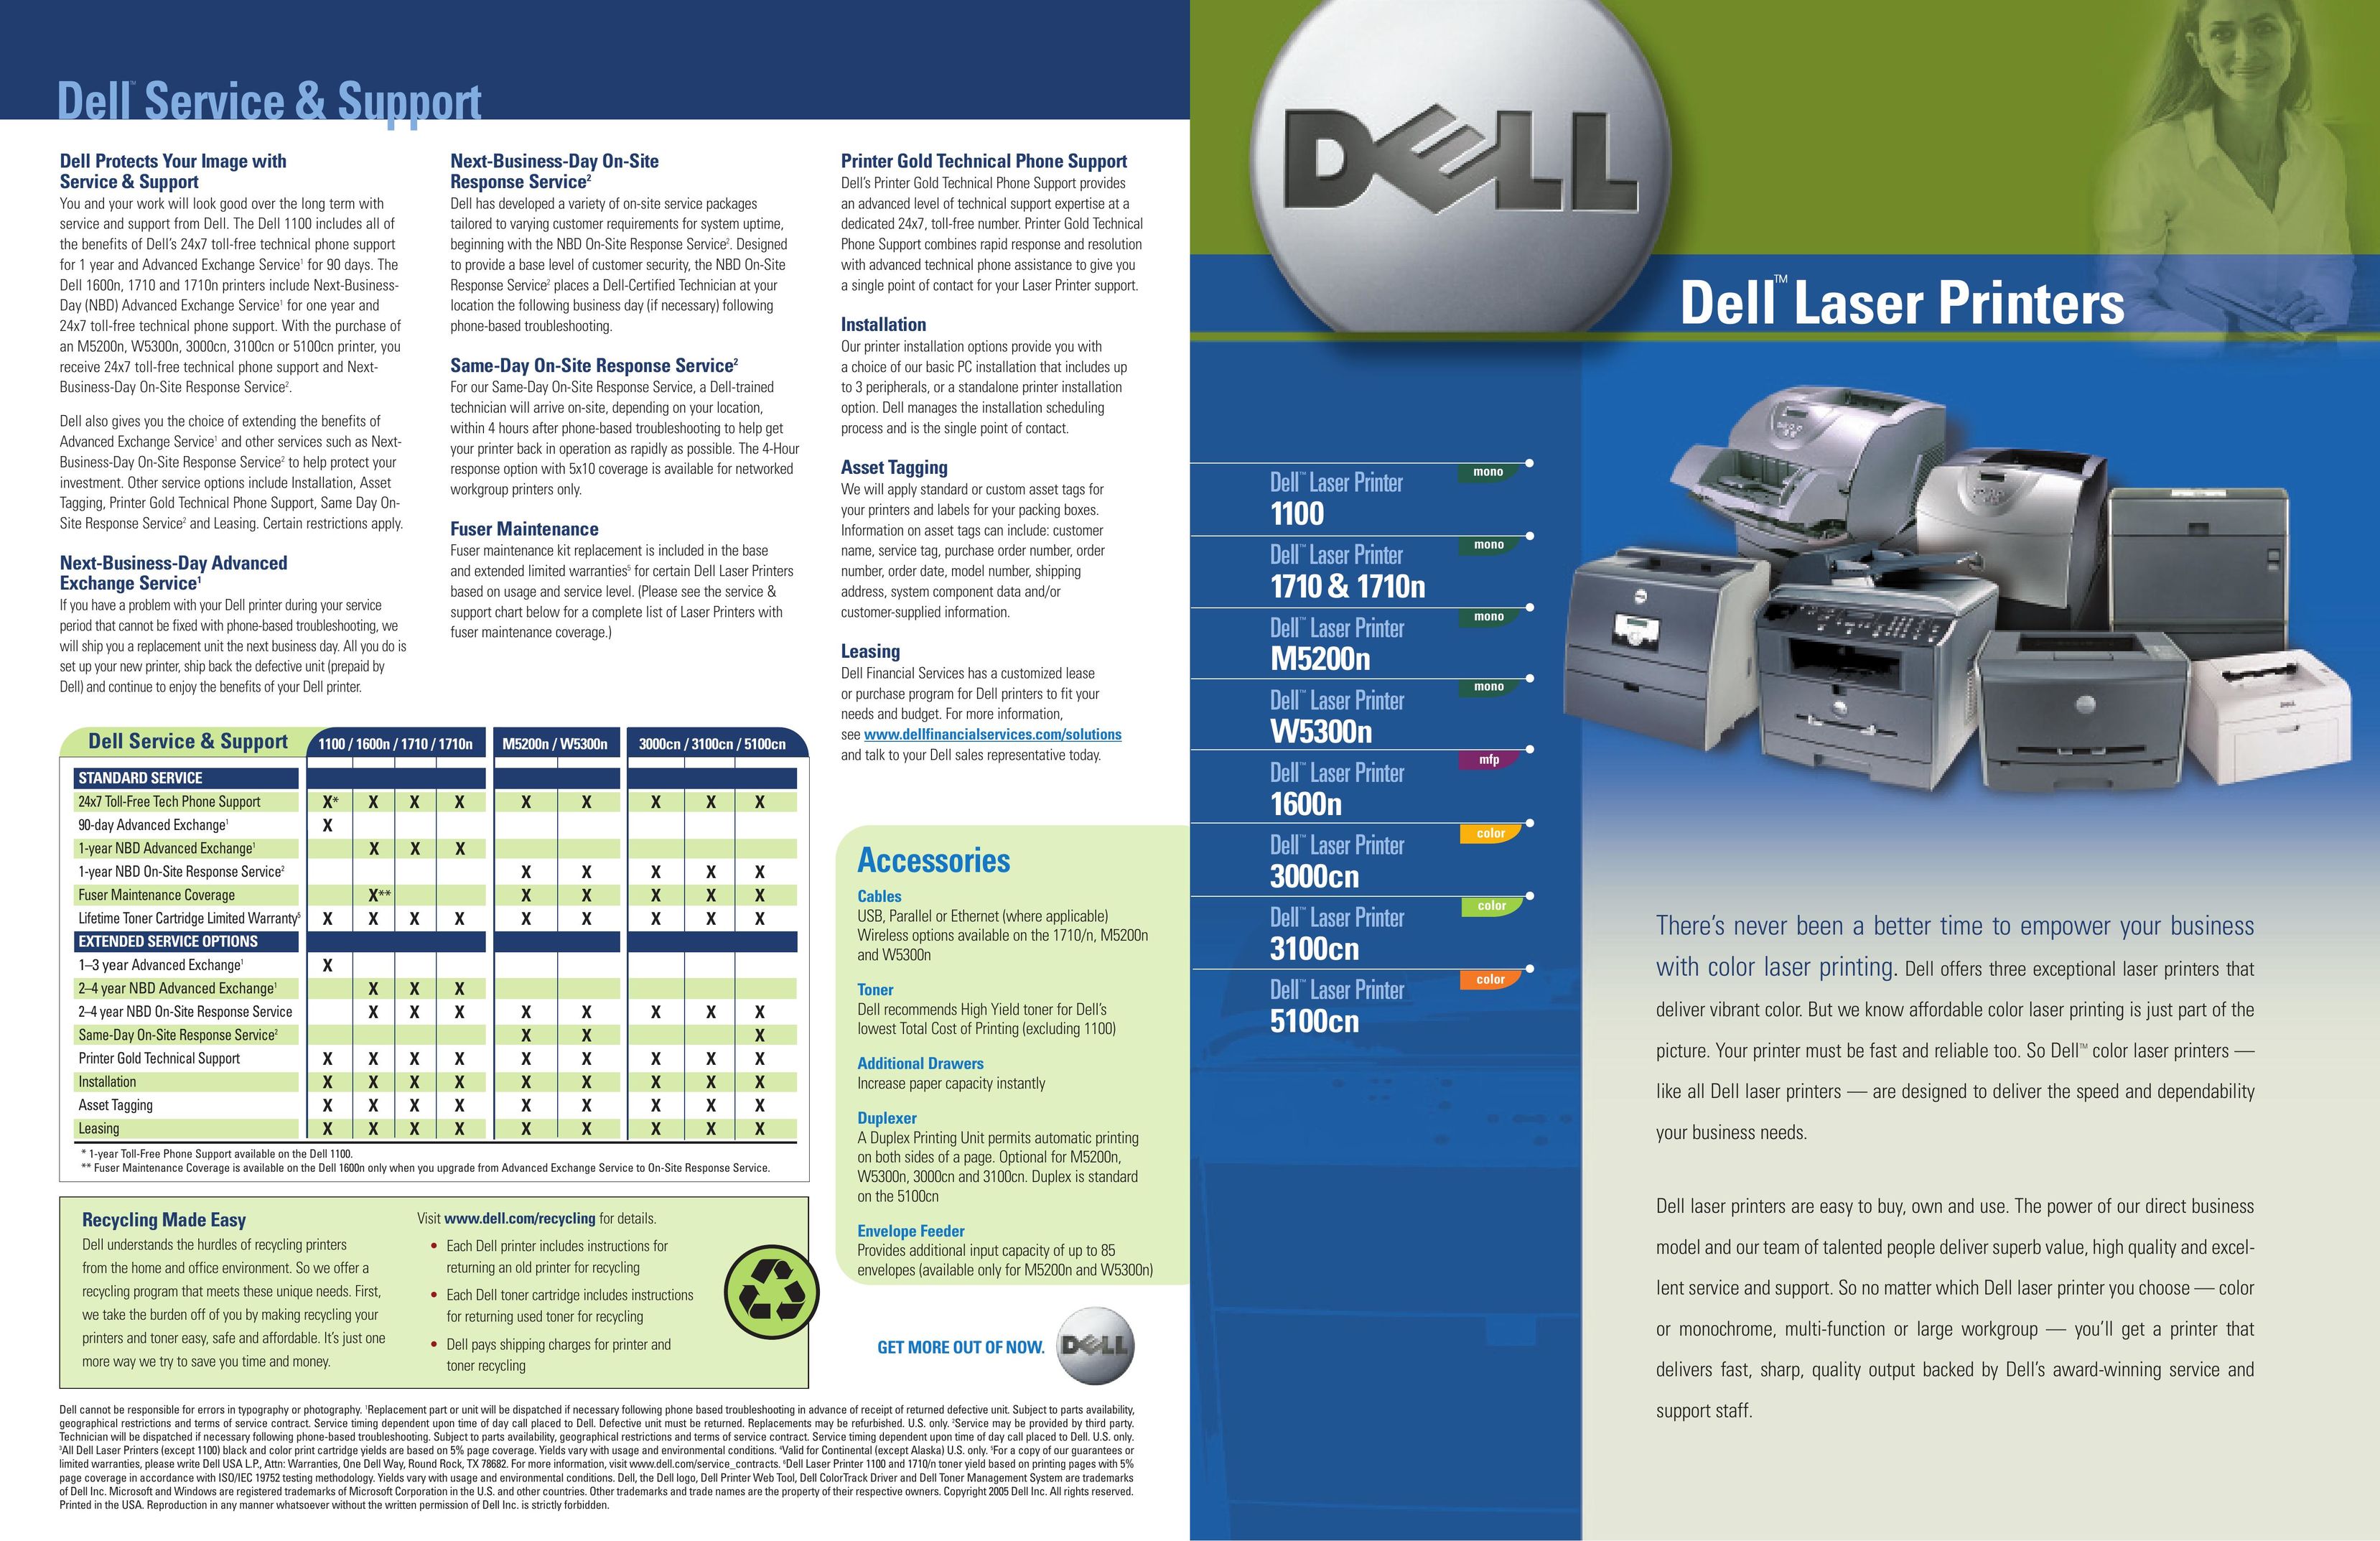 Dell 1100 Printer User Manual